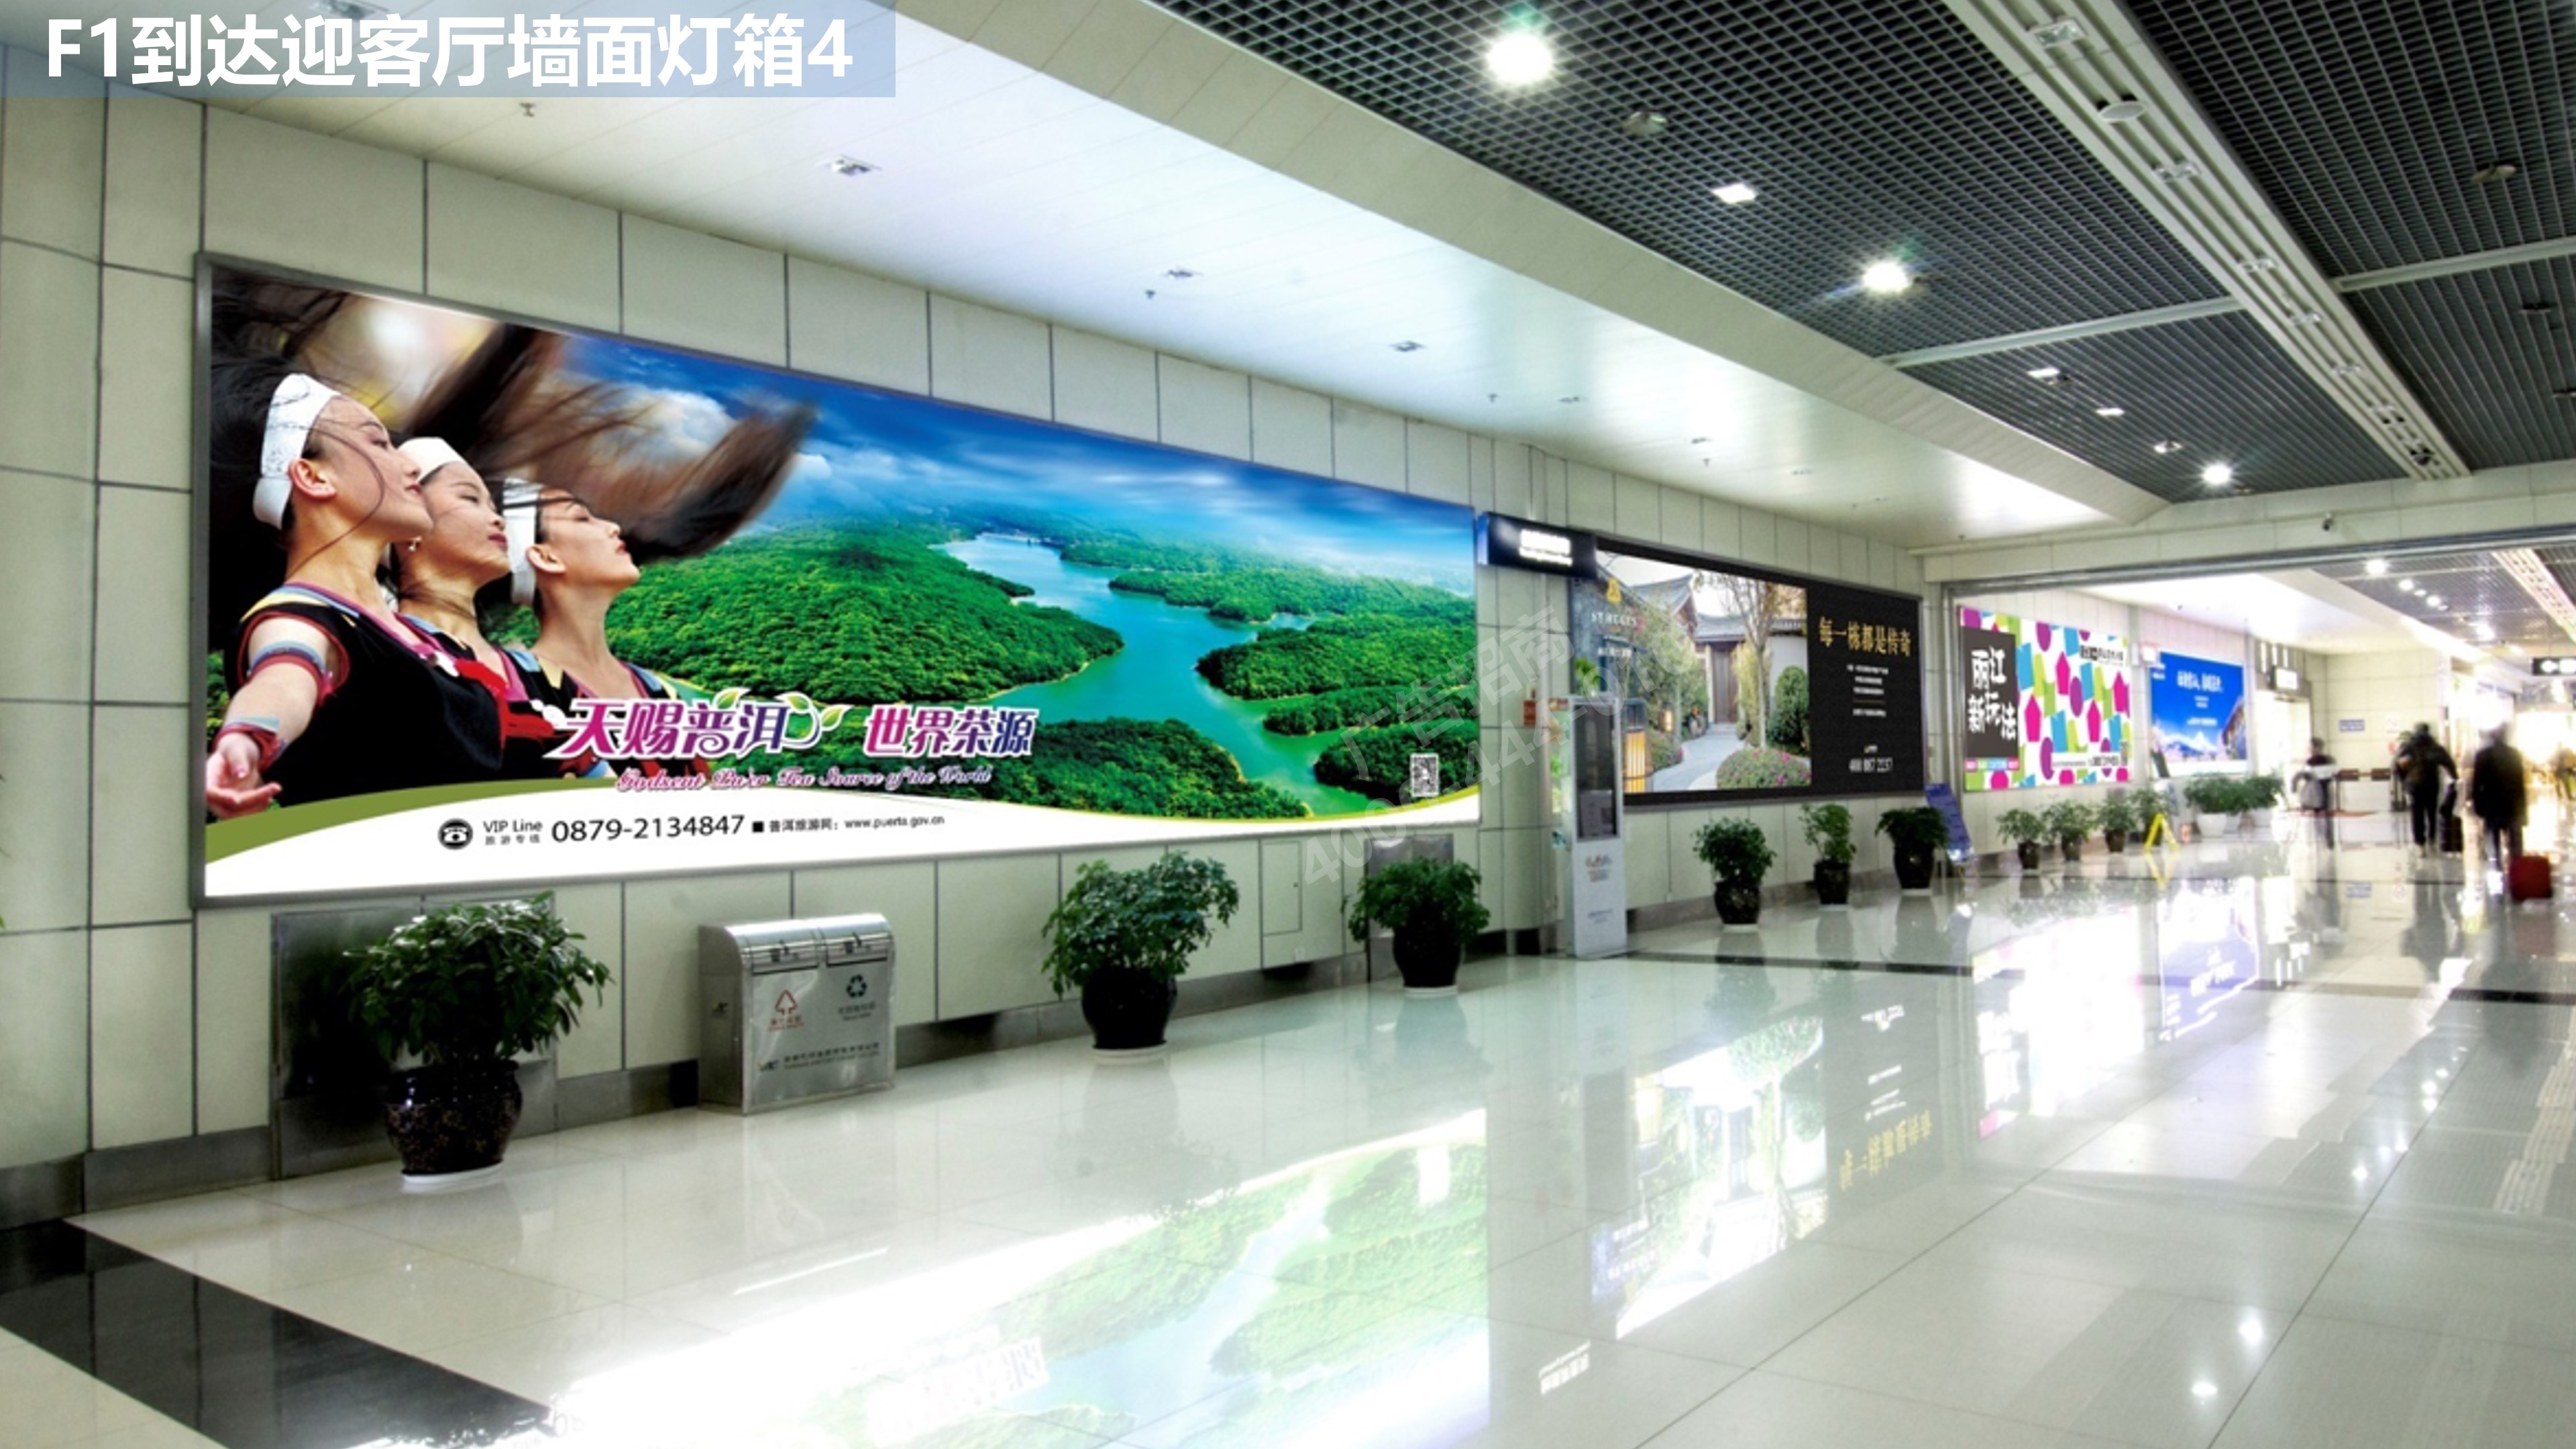 丽江机场迎客厅广告5